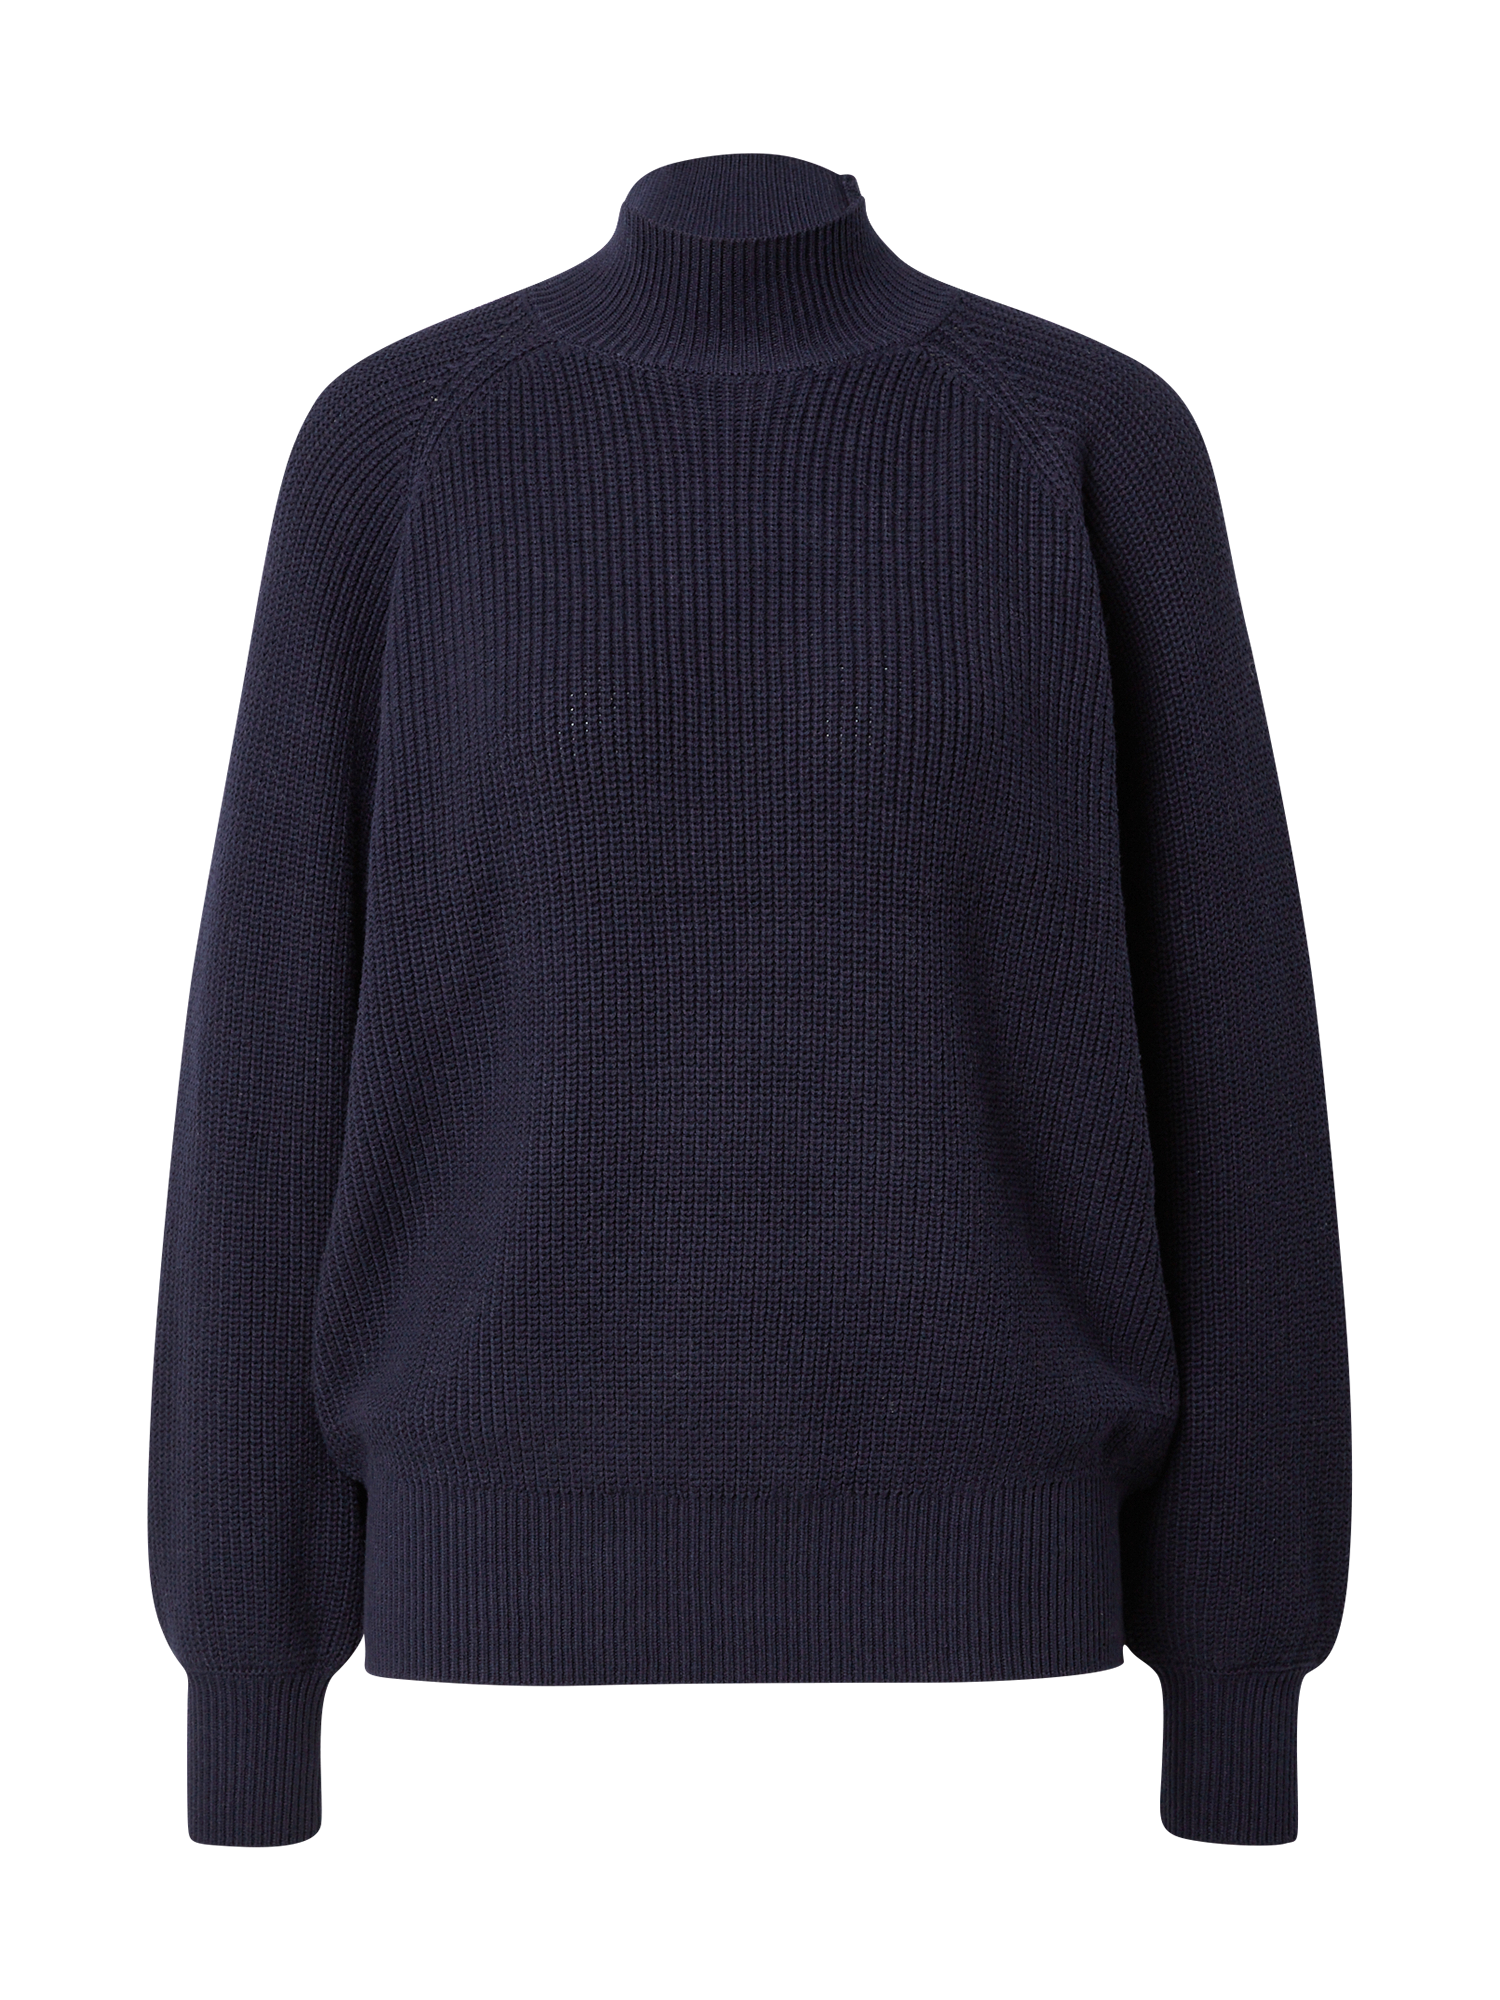 Odzież Kobiety Moves Sweter Mily w kolorze Granatowym 